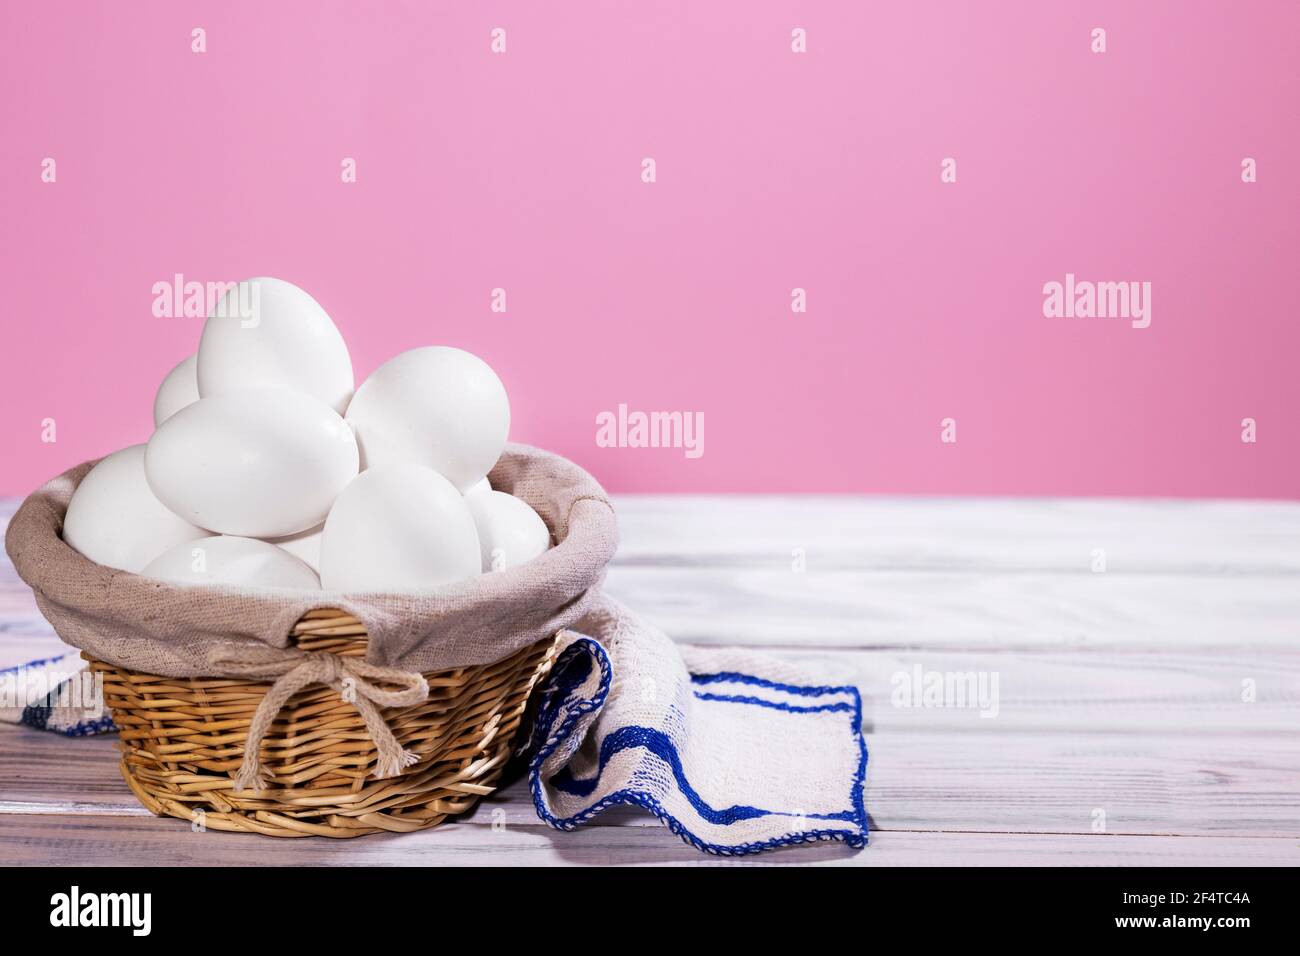 Uova di pollo bianche in un cestino di paglia su uno sfondo rosa con pezzo di stoffa, prodotto naturale Foto Stock